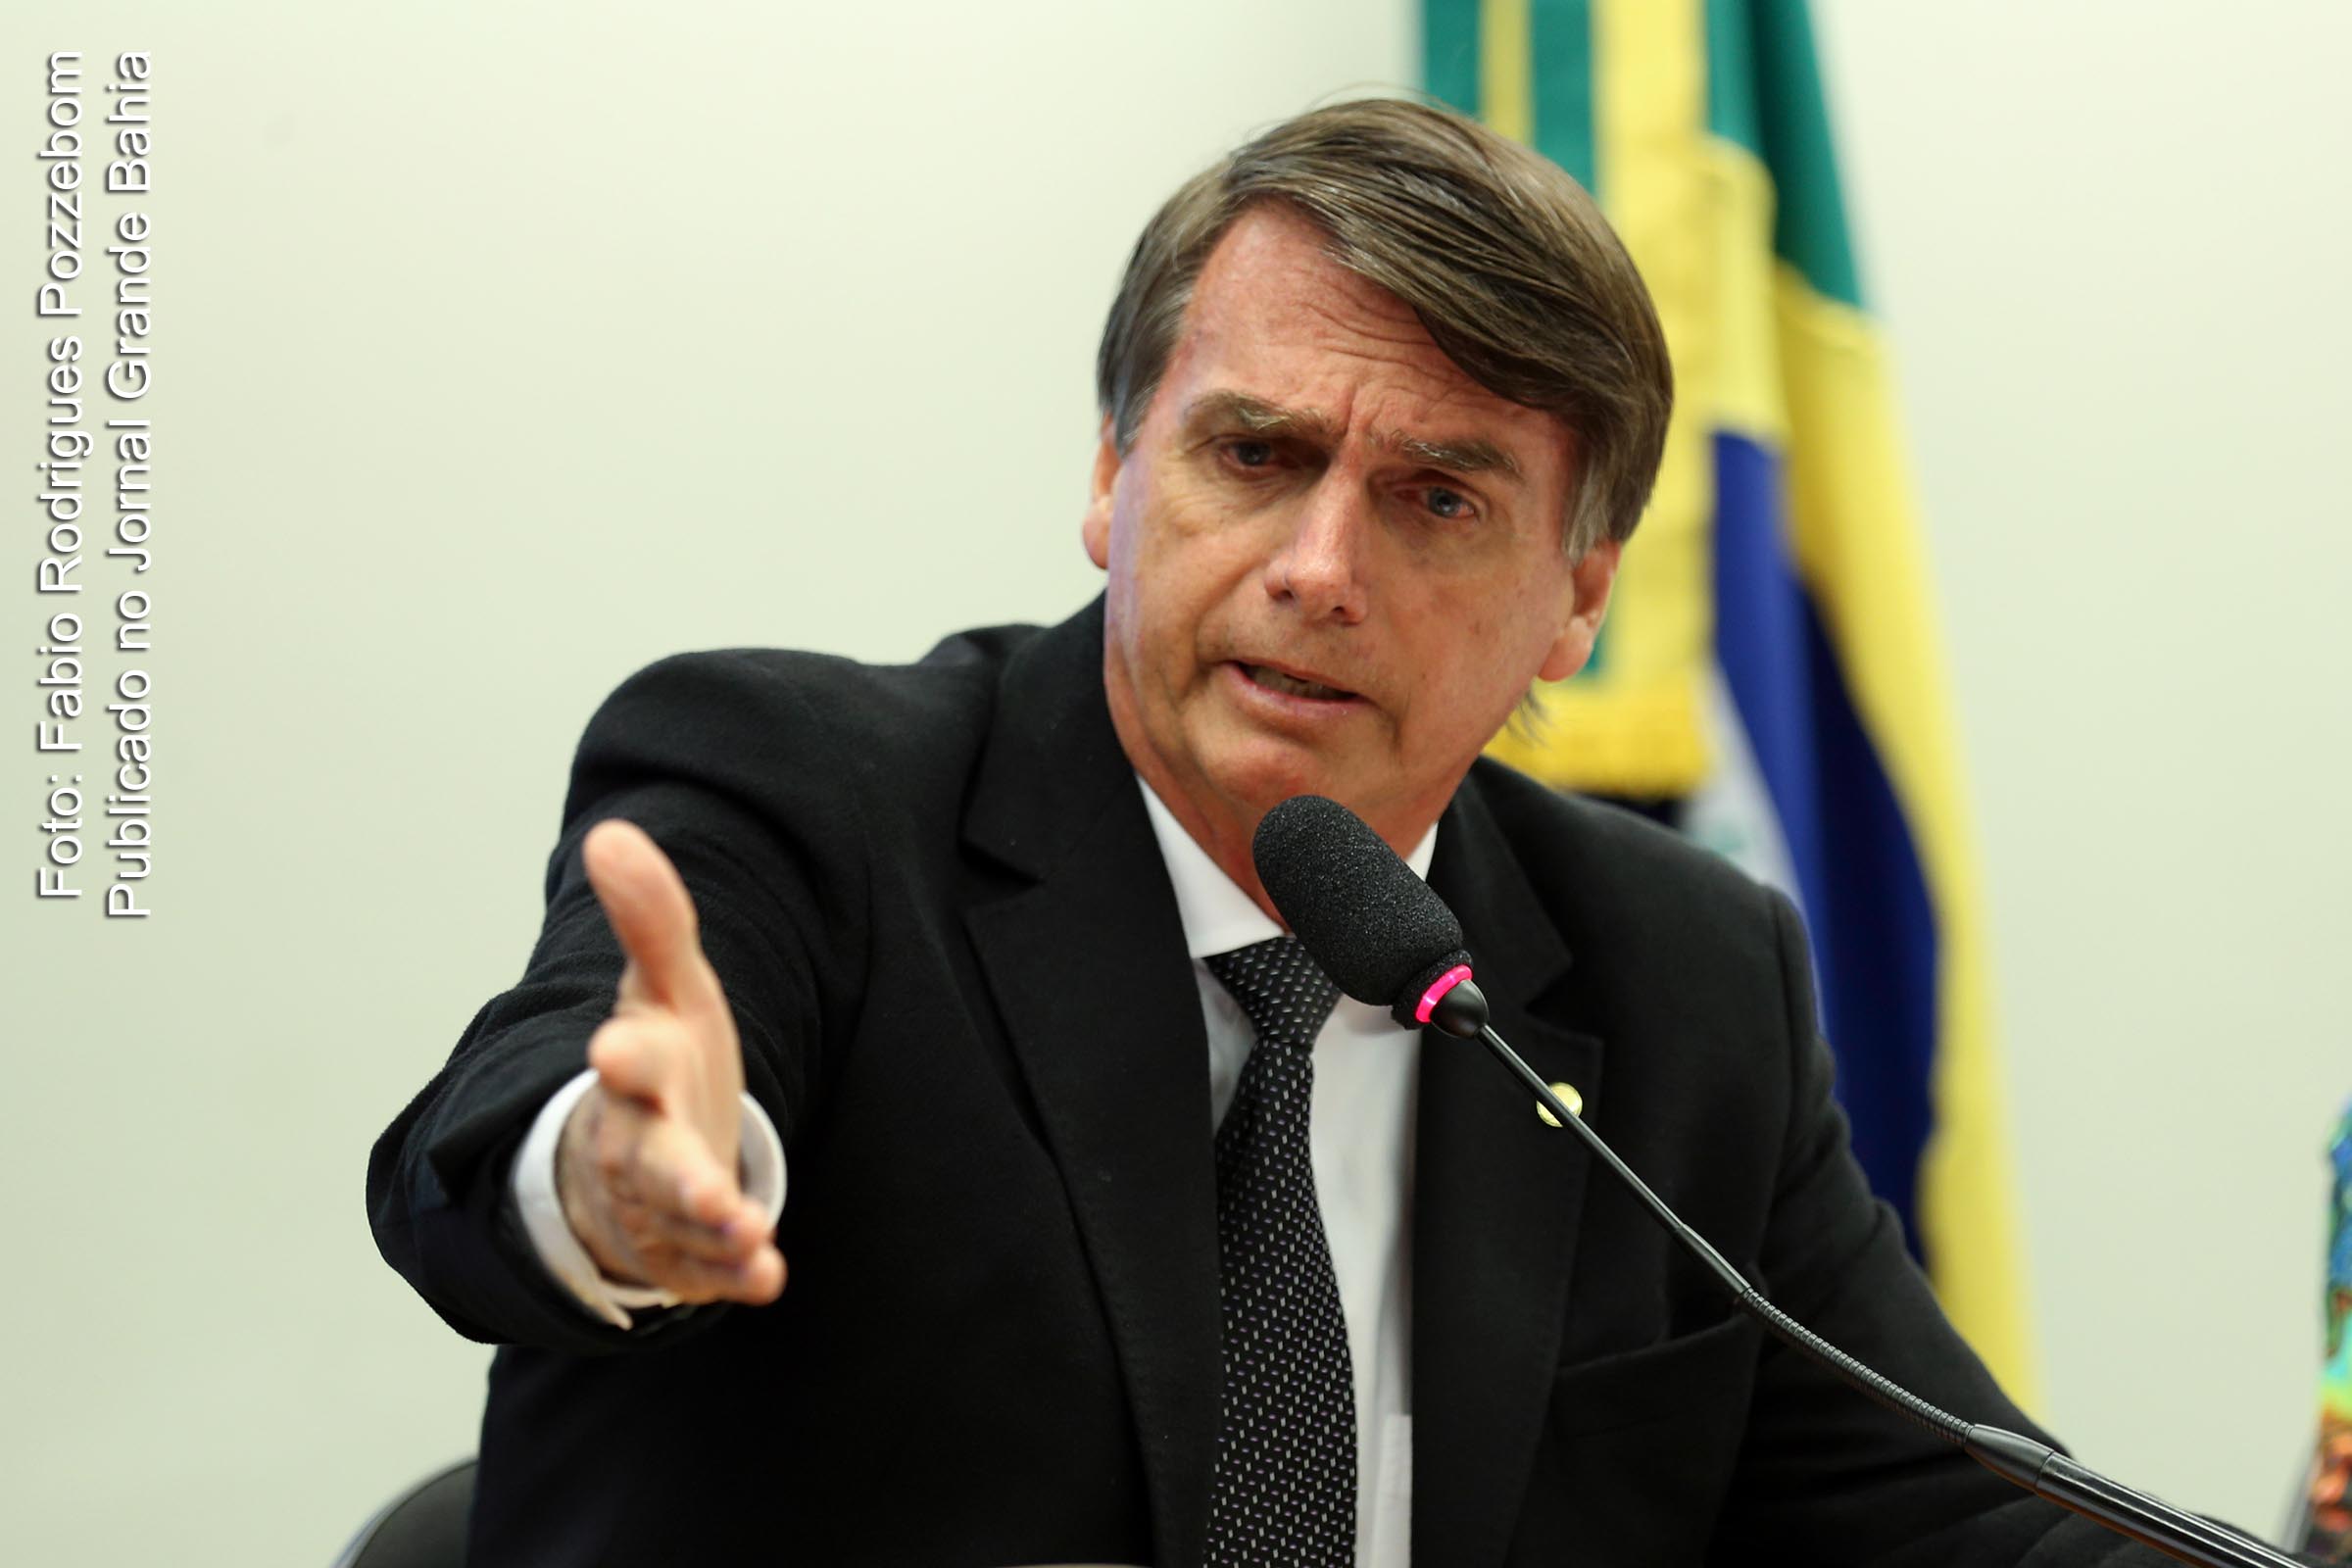 Páginas vinculadas ao deputado Jair Messias Bolsonaro são suspensas pelo Facebook.